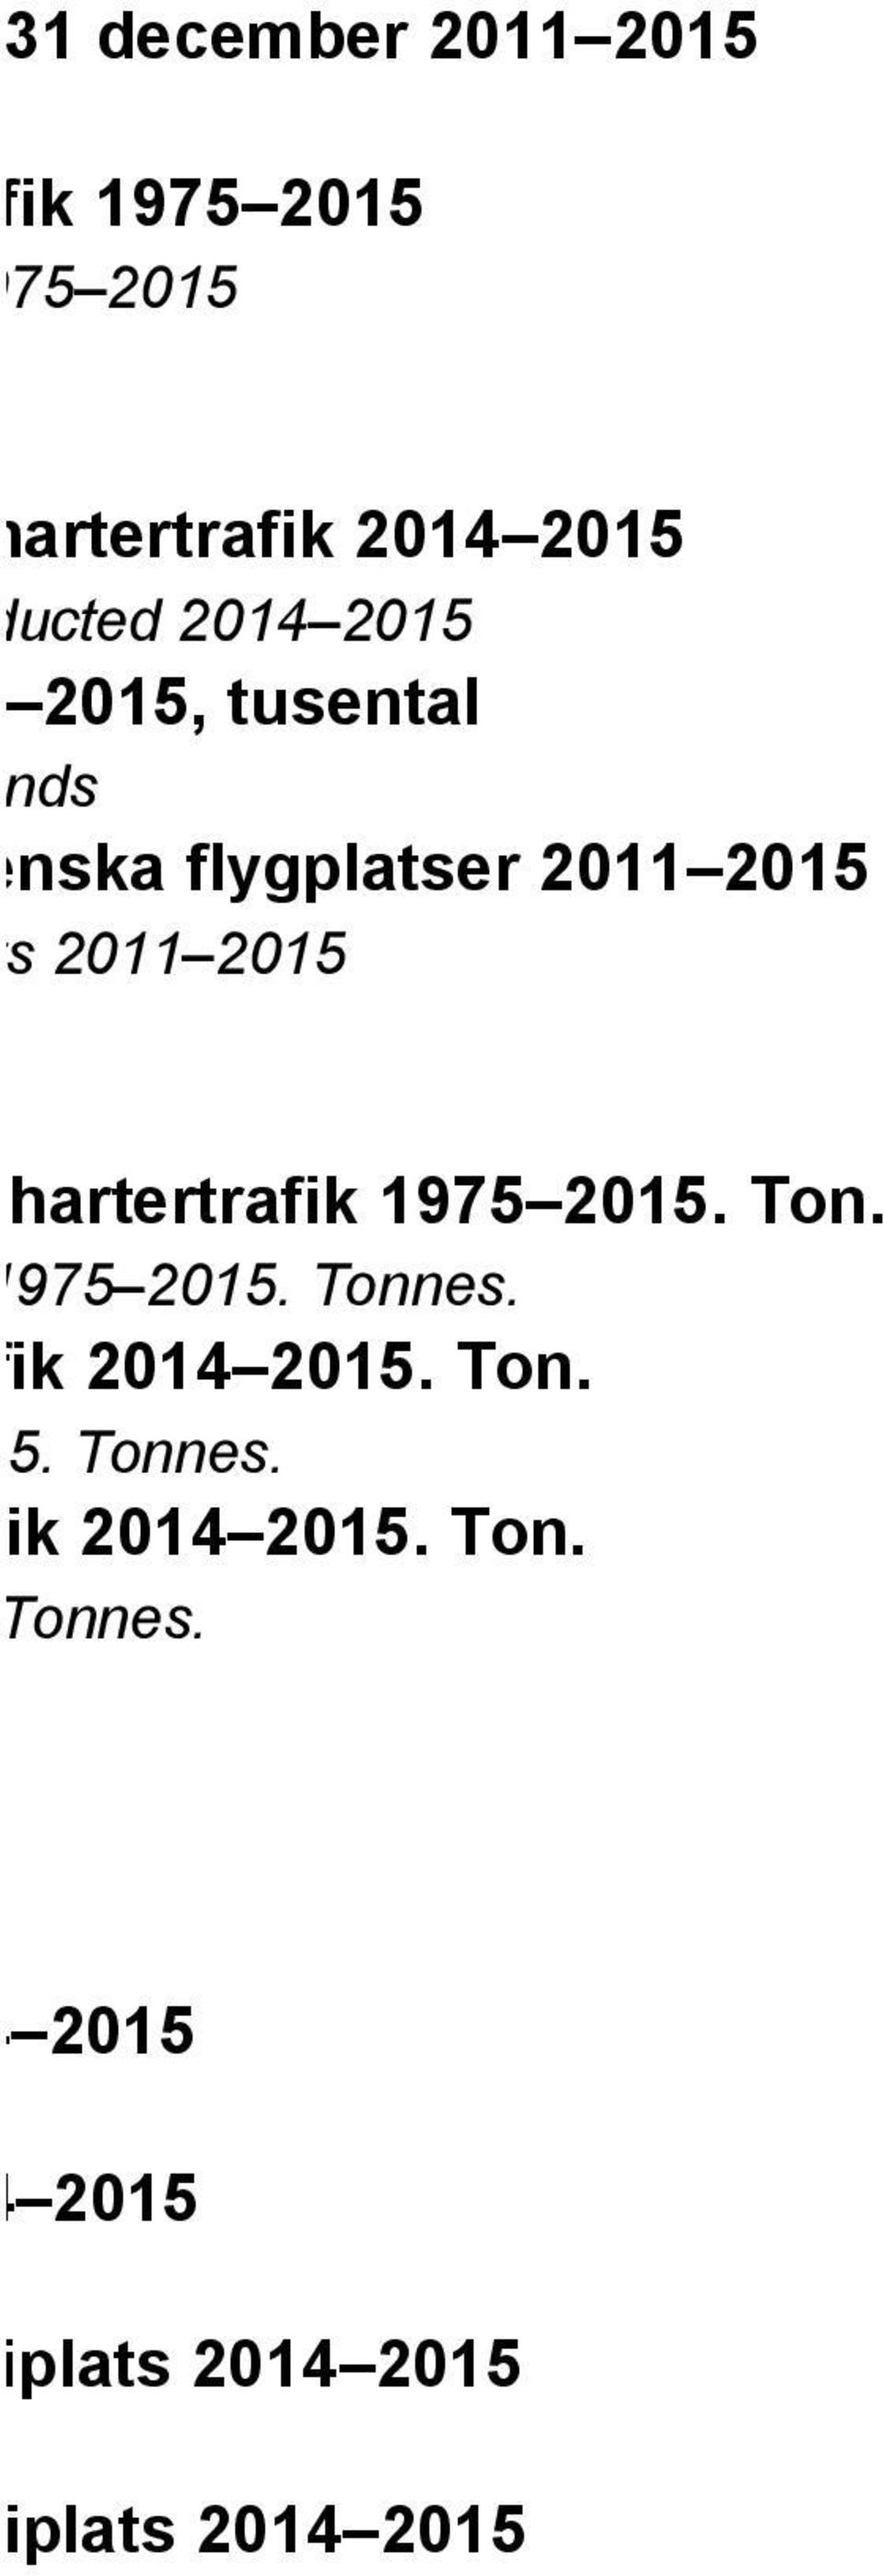 linjefart och chartertrafik 1975 2015. Ton. fic is conducted 1975 2015. Tonnes. ch chartertrafik 2014 2015. Ton. ucted 2014 2015. Tonnes. ch chartertrafik 2014 2015. Ton. ted 2014 2015.